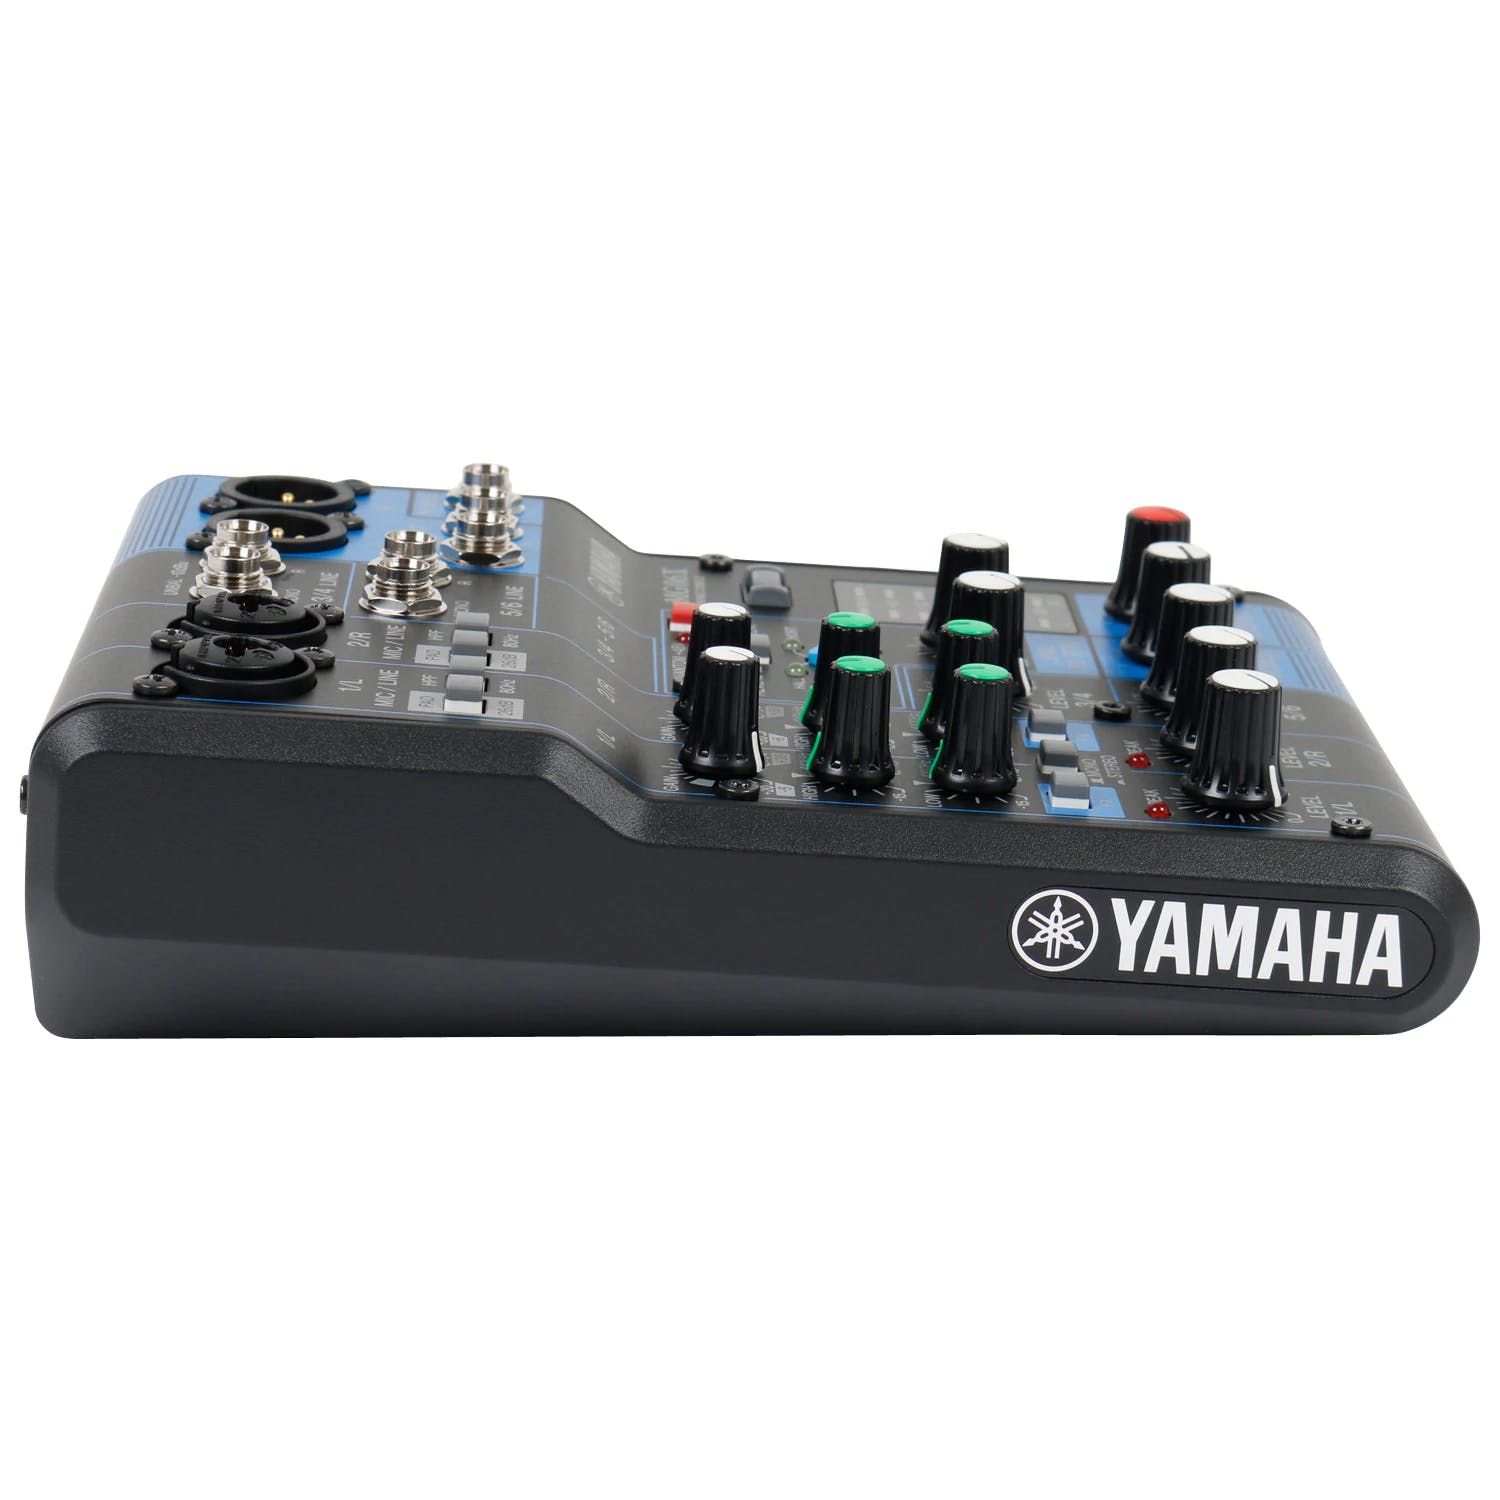 Yamaha MG06X - Table de mixage 2 entrées XLR/Jack et 2 entrées stéréo Jack  avec effets + adaptateur secteur